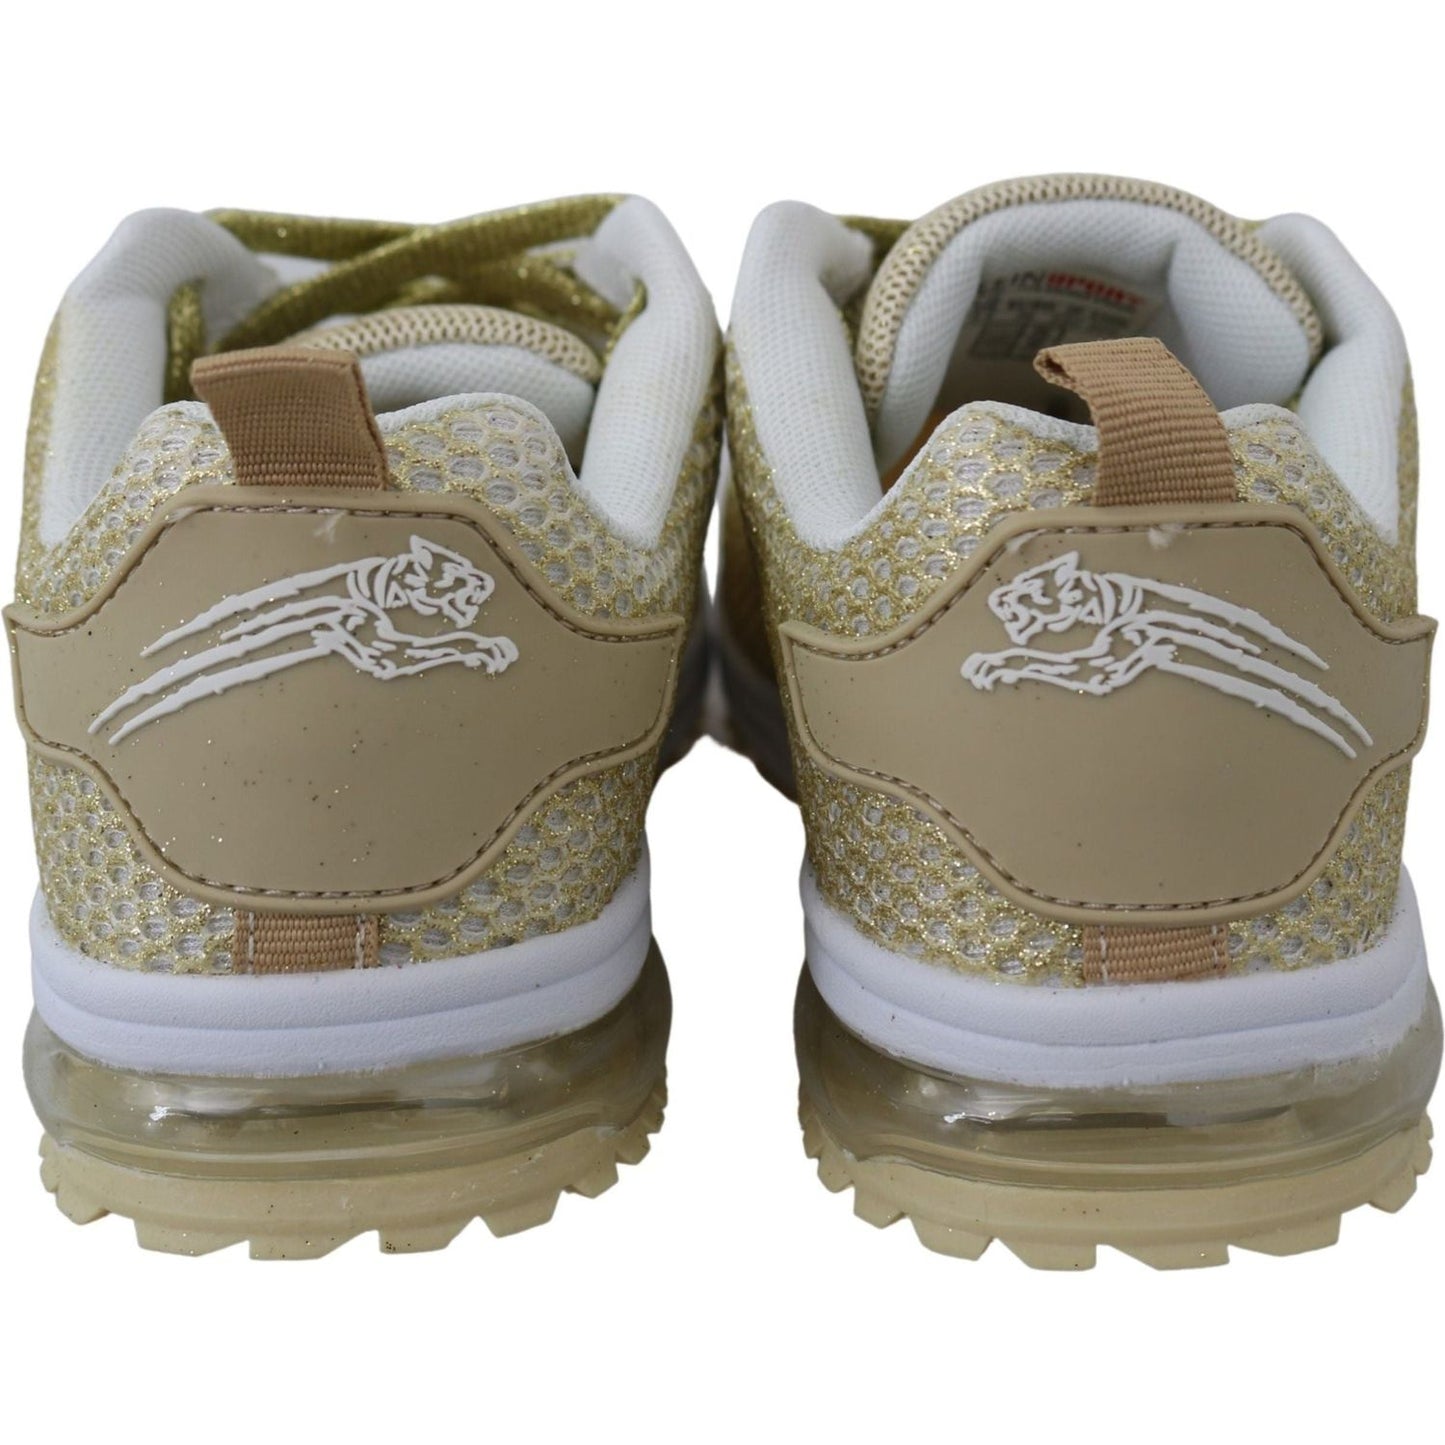 Plein Sport Exquisite Gold Polyester Sport Sneakers gold-polyester-gretel-sneakers-shoes IMG_2991-scaled-2aedbcc3-599.jpg